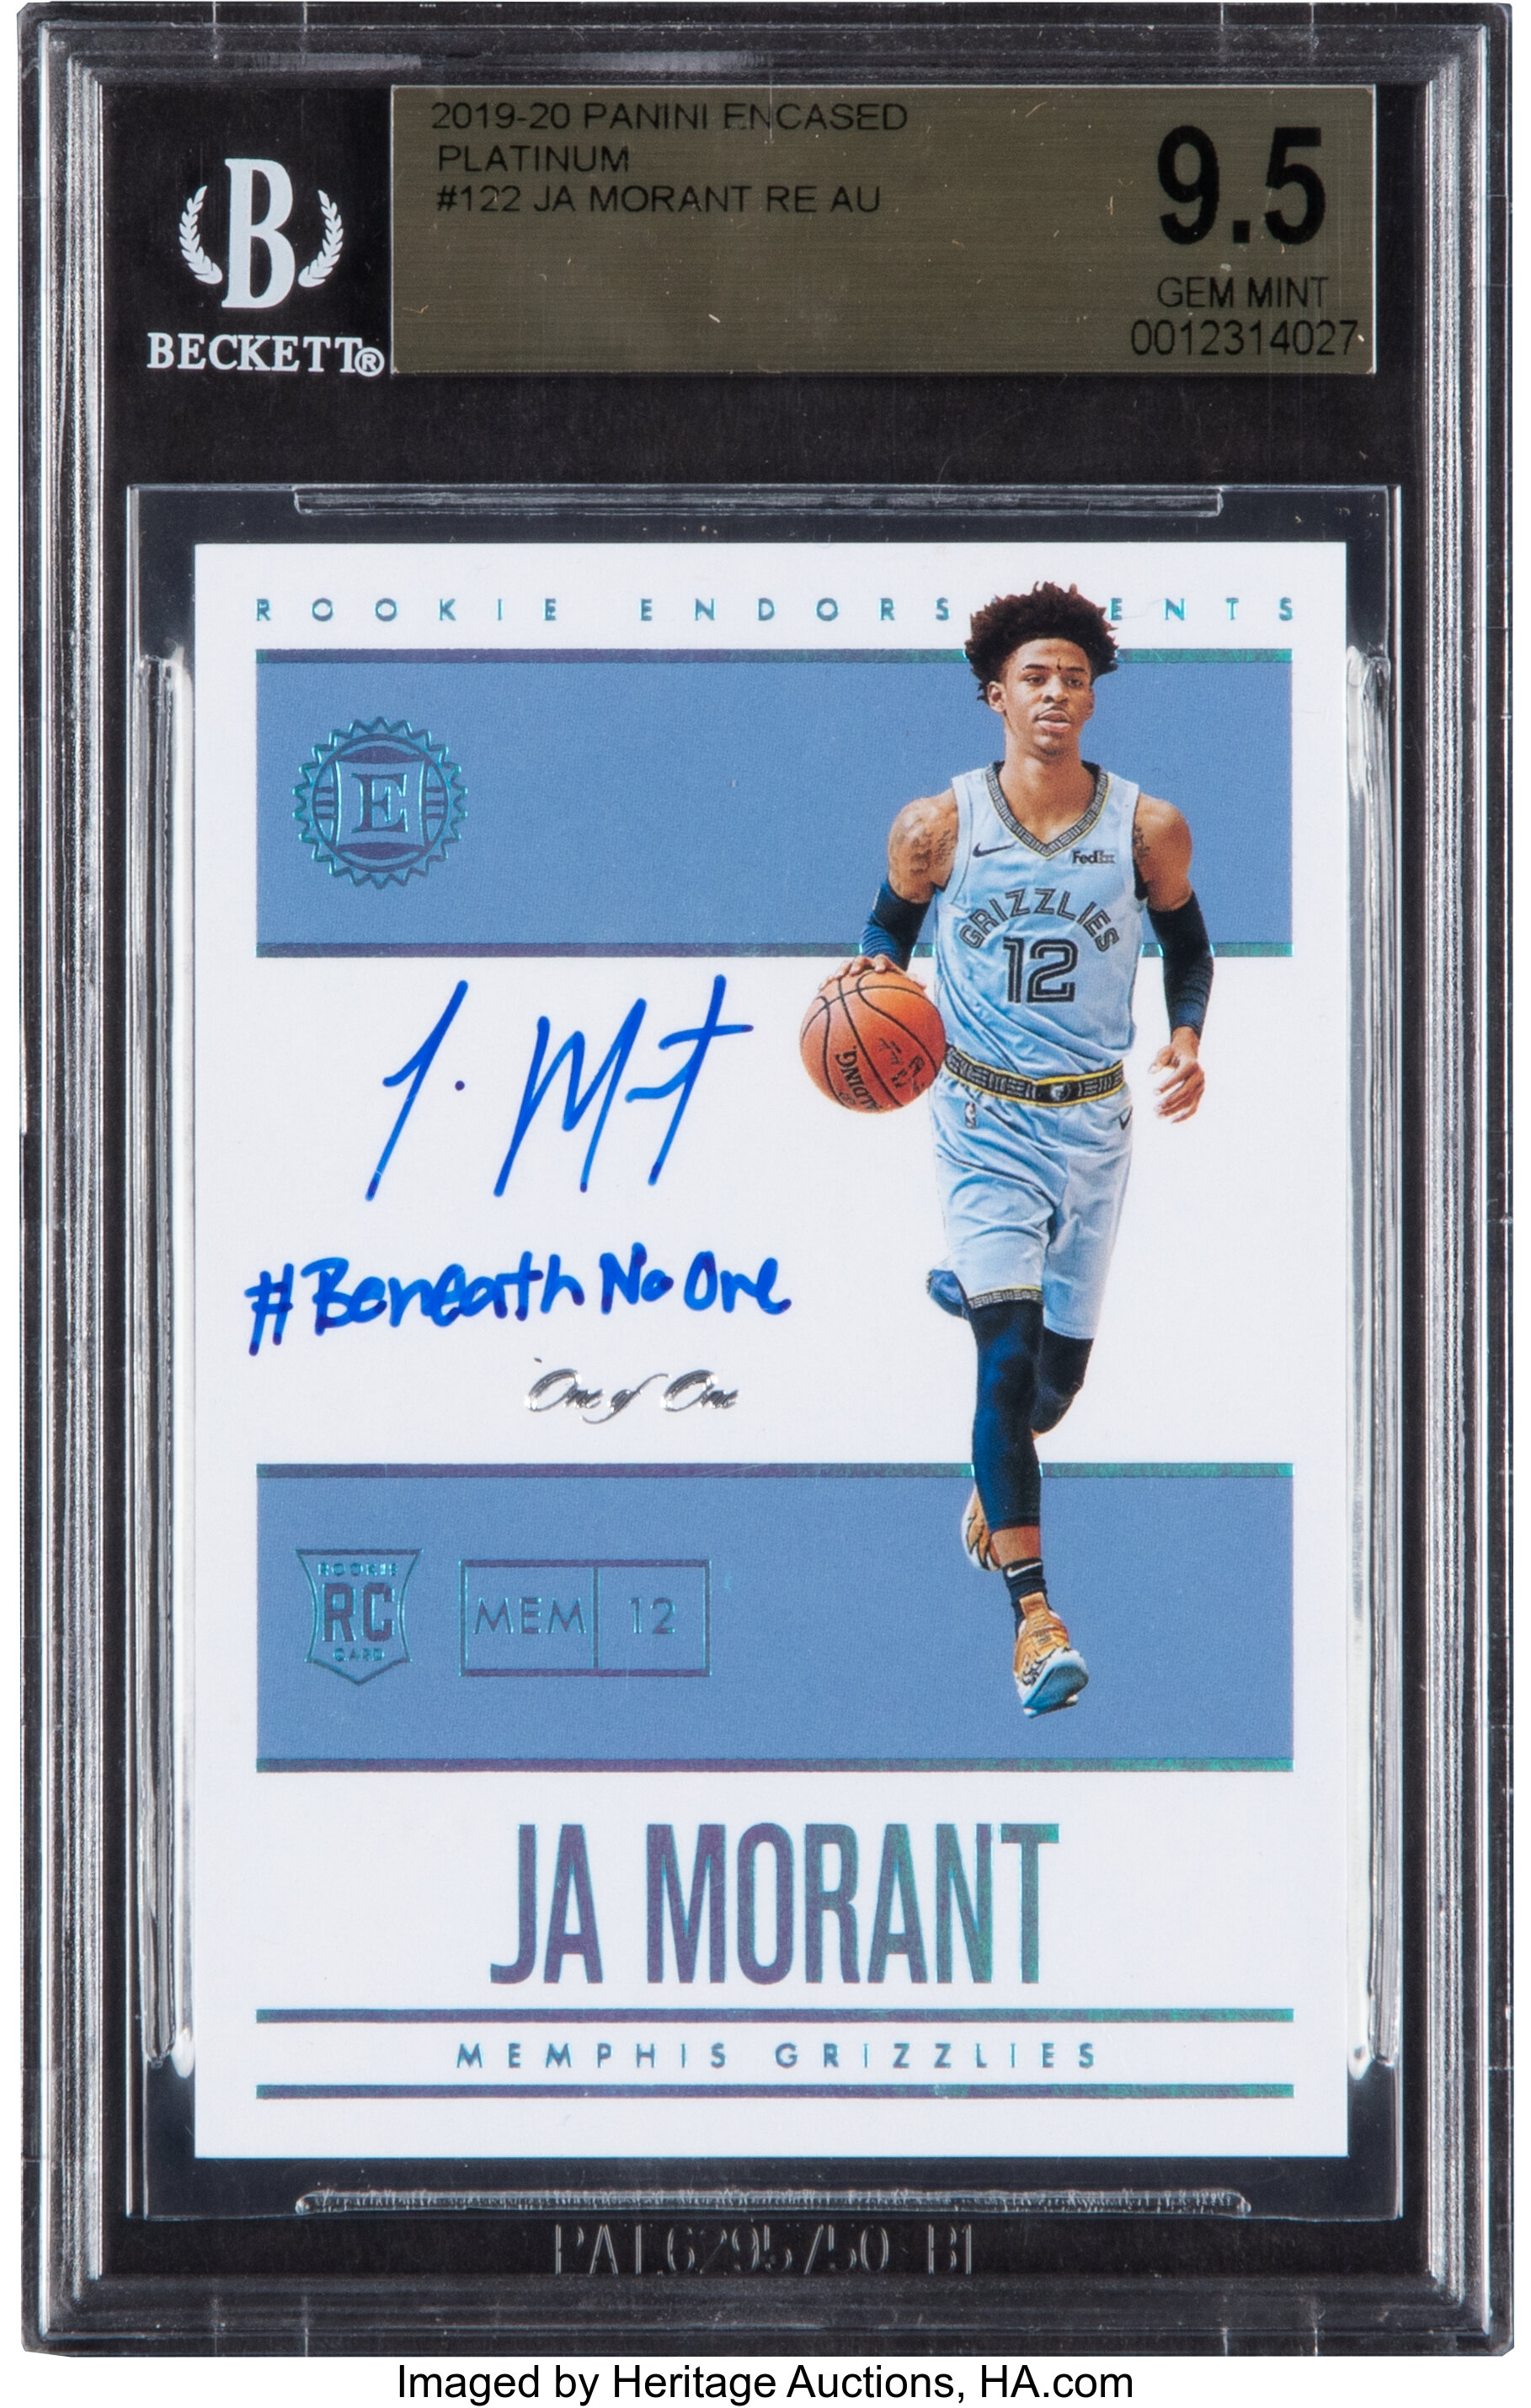 Temetrius Morant 2019-20 Memphis Grizzlies Light Blue Jersey